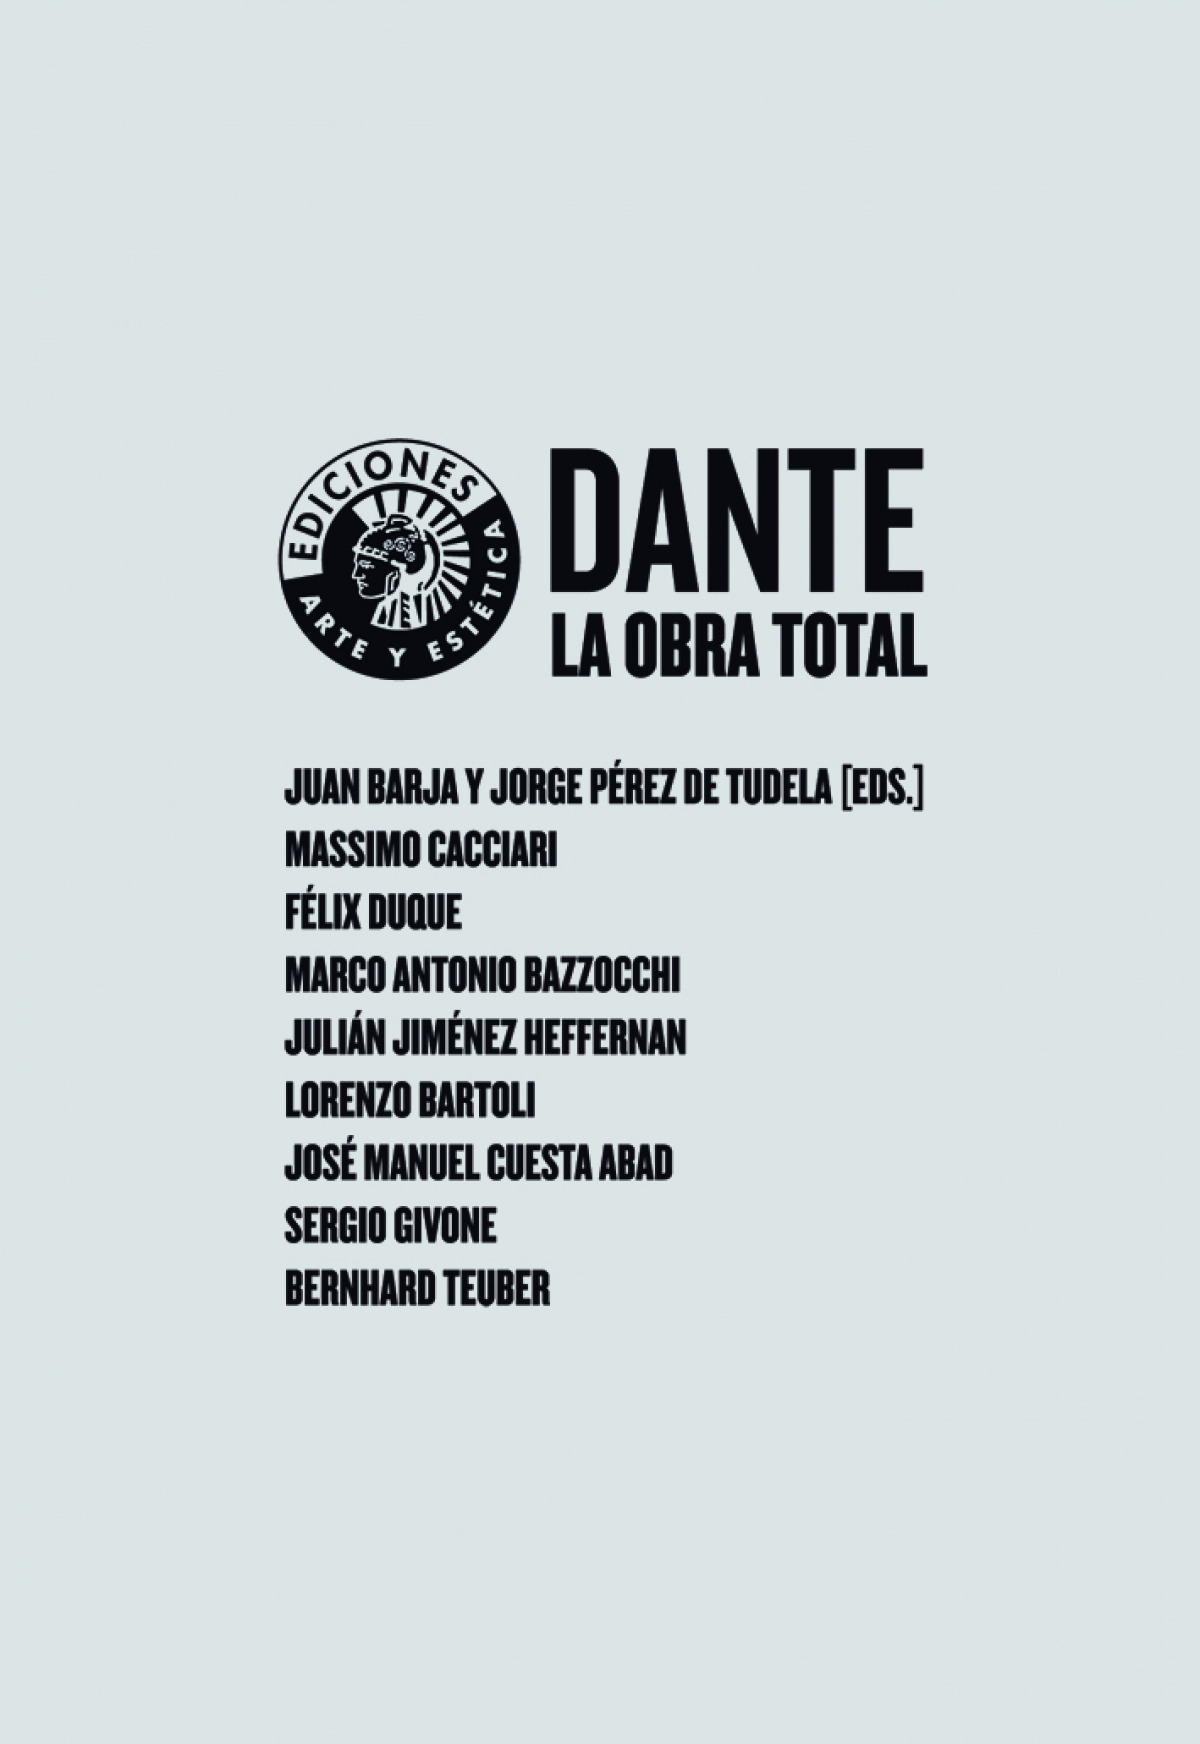 Dante obra total - Aa.Vv